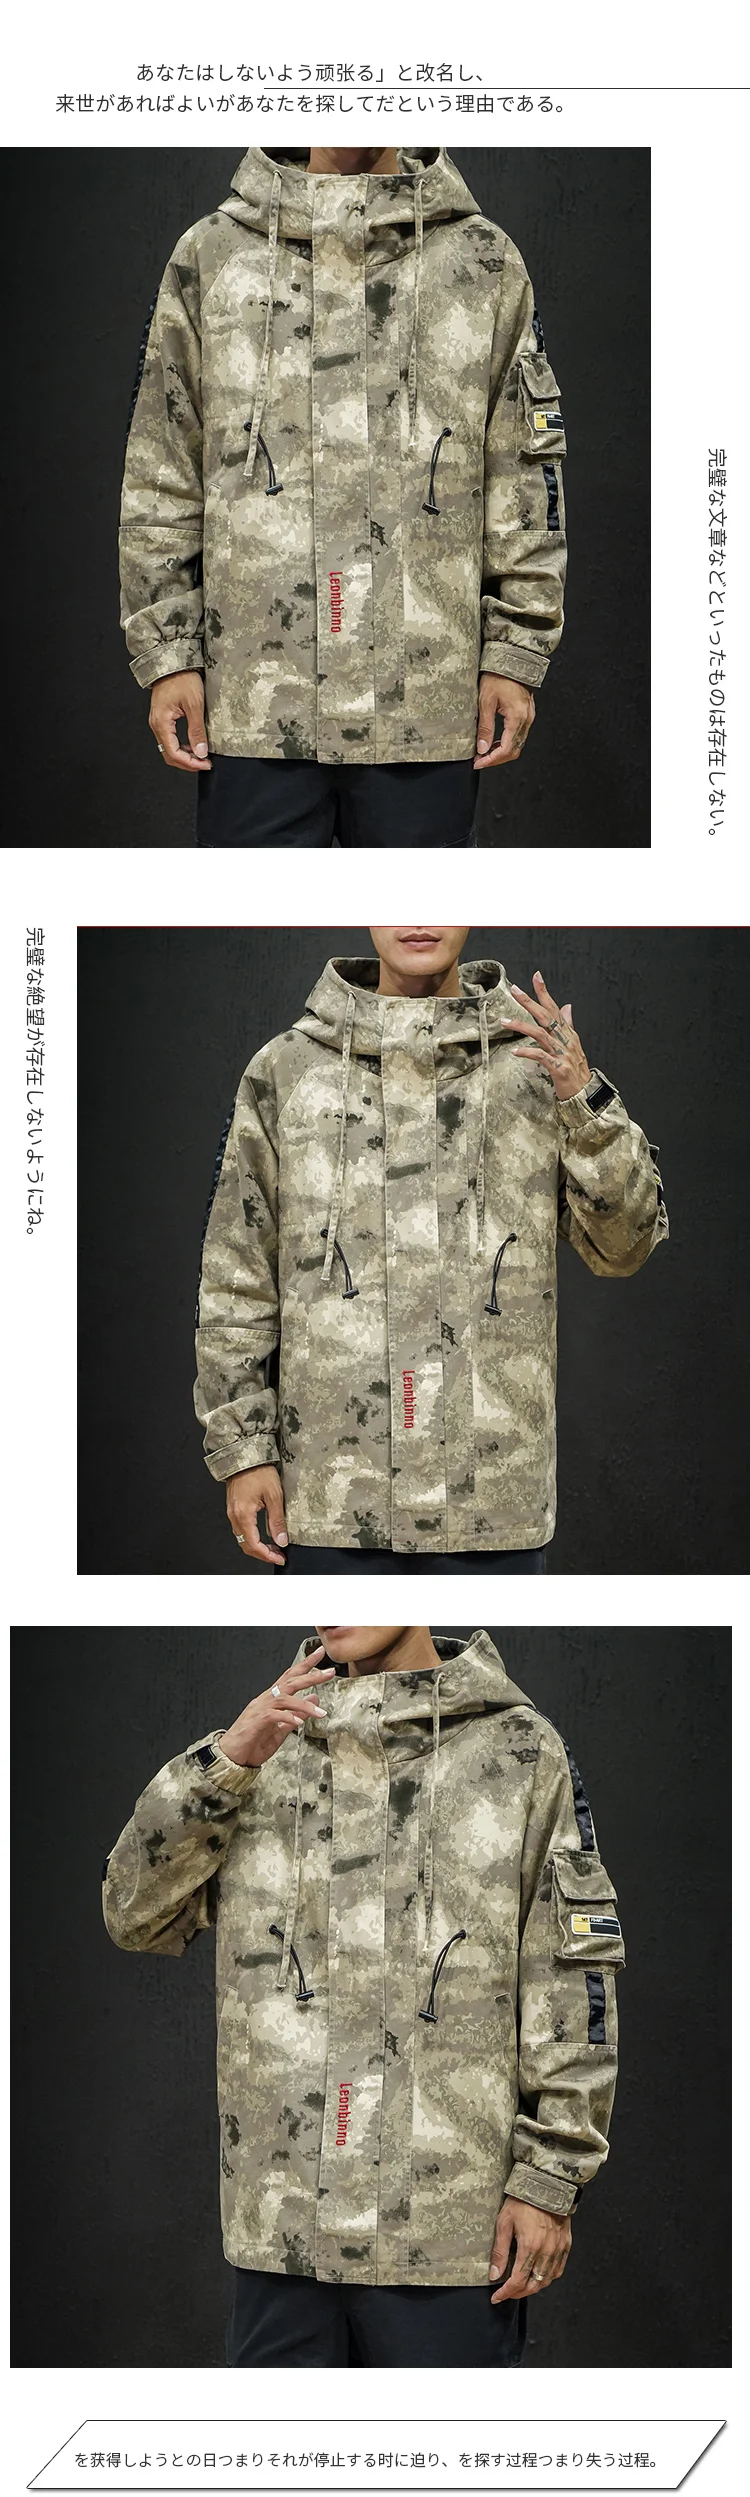 Модная камуфляжная куртка мужская комбинезоны Японская уличная Толстовка Военный стиль пальто тактическая куртка хип хоп Корейская одежда